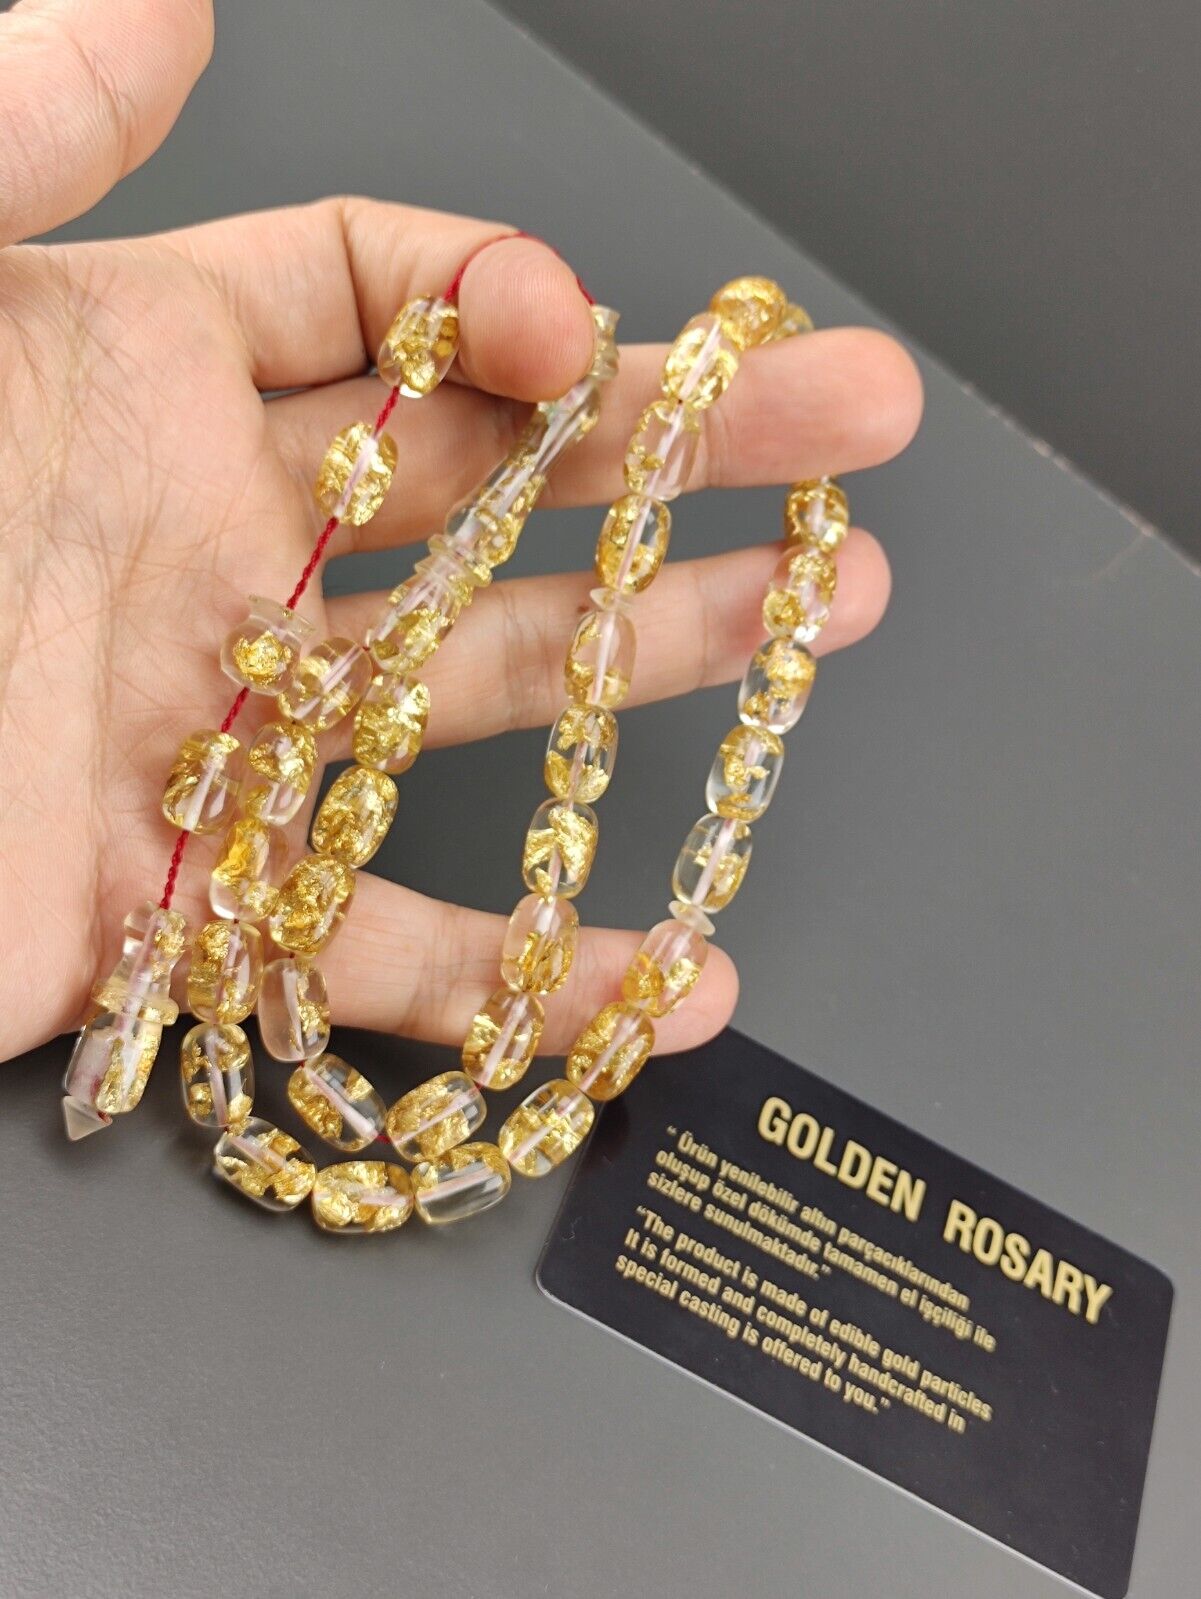 24k gold aircraft glass rosary, İslamic rosary, misbaha, tasbih, tasbeeh,masbaha